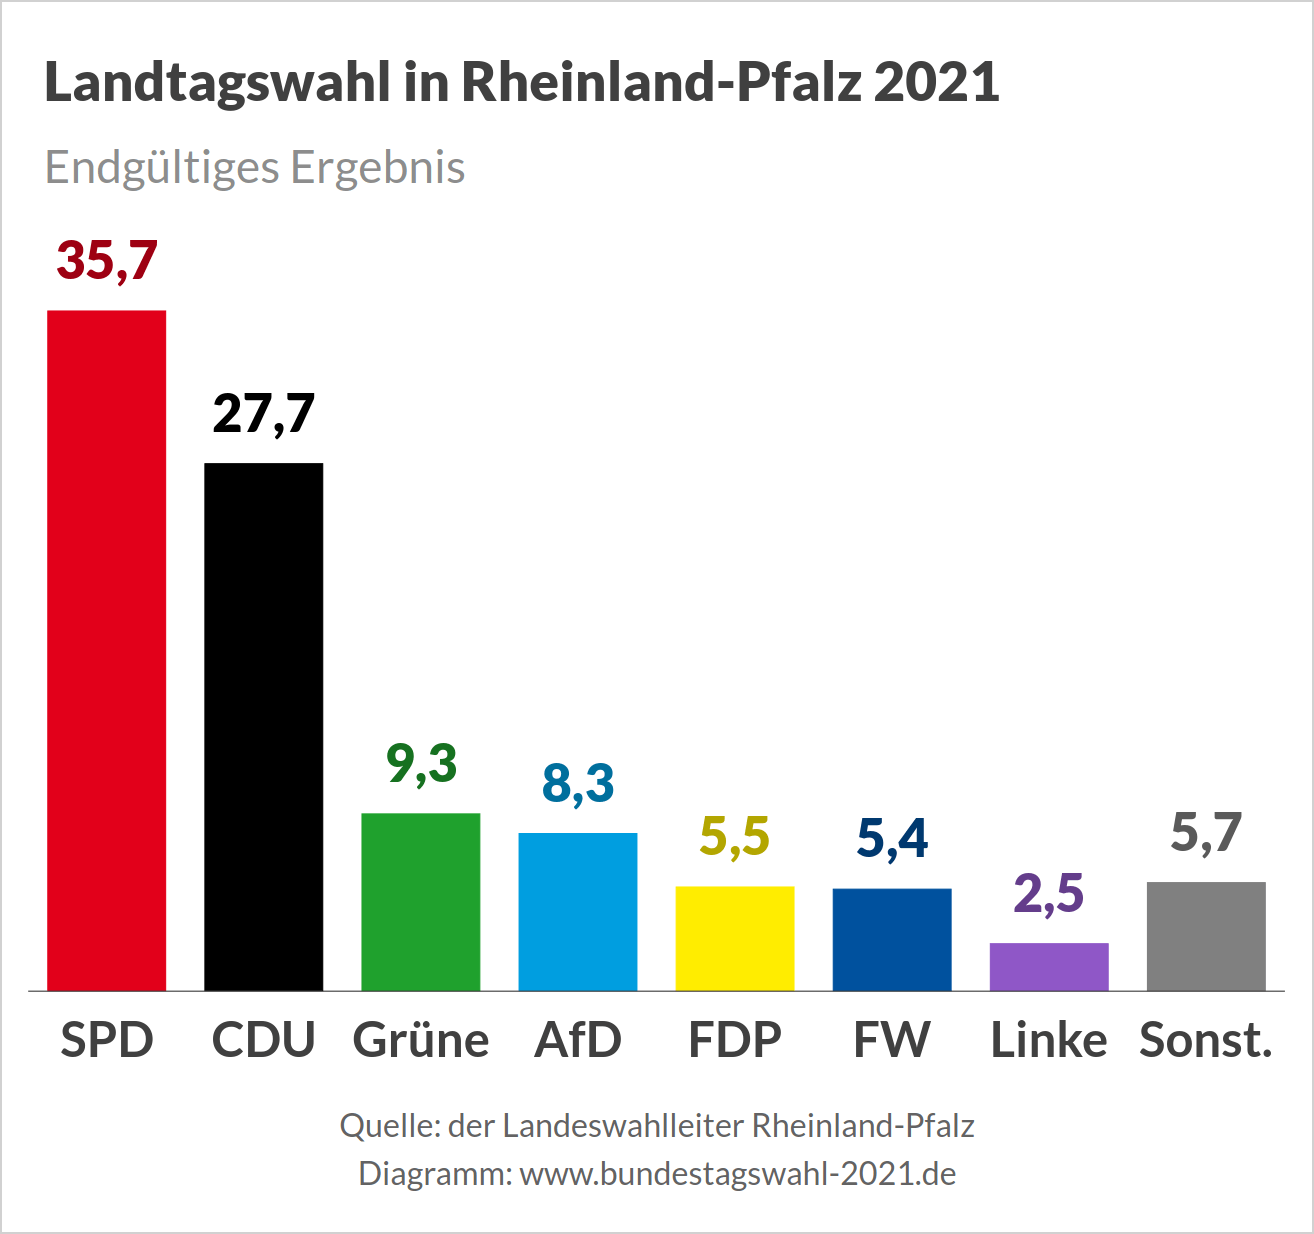 Landtagswahl in Rheinland-Pfalz, Wahlergebnis (Endgültiges Ergebnis)